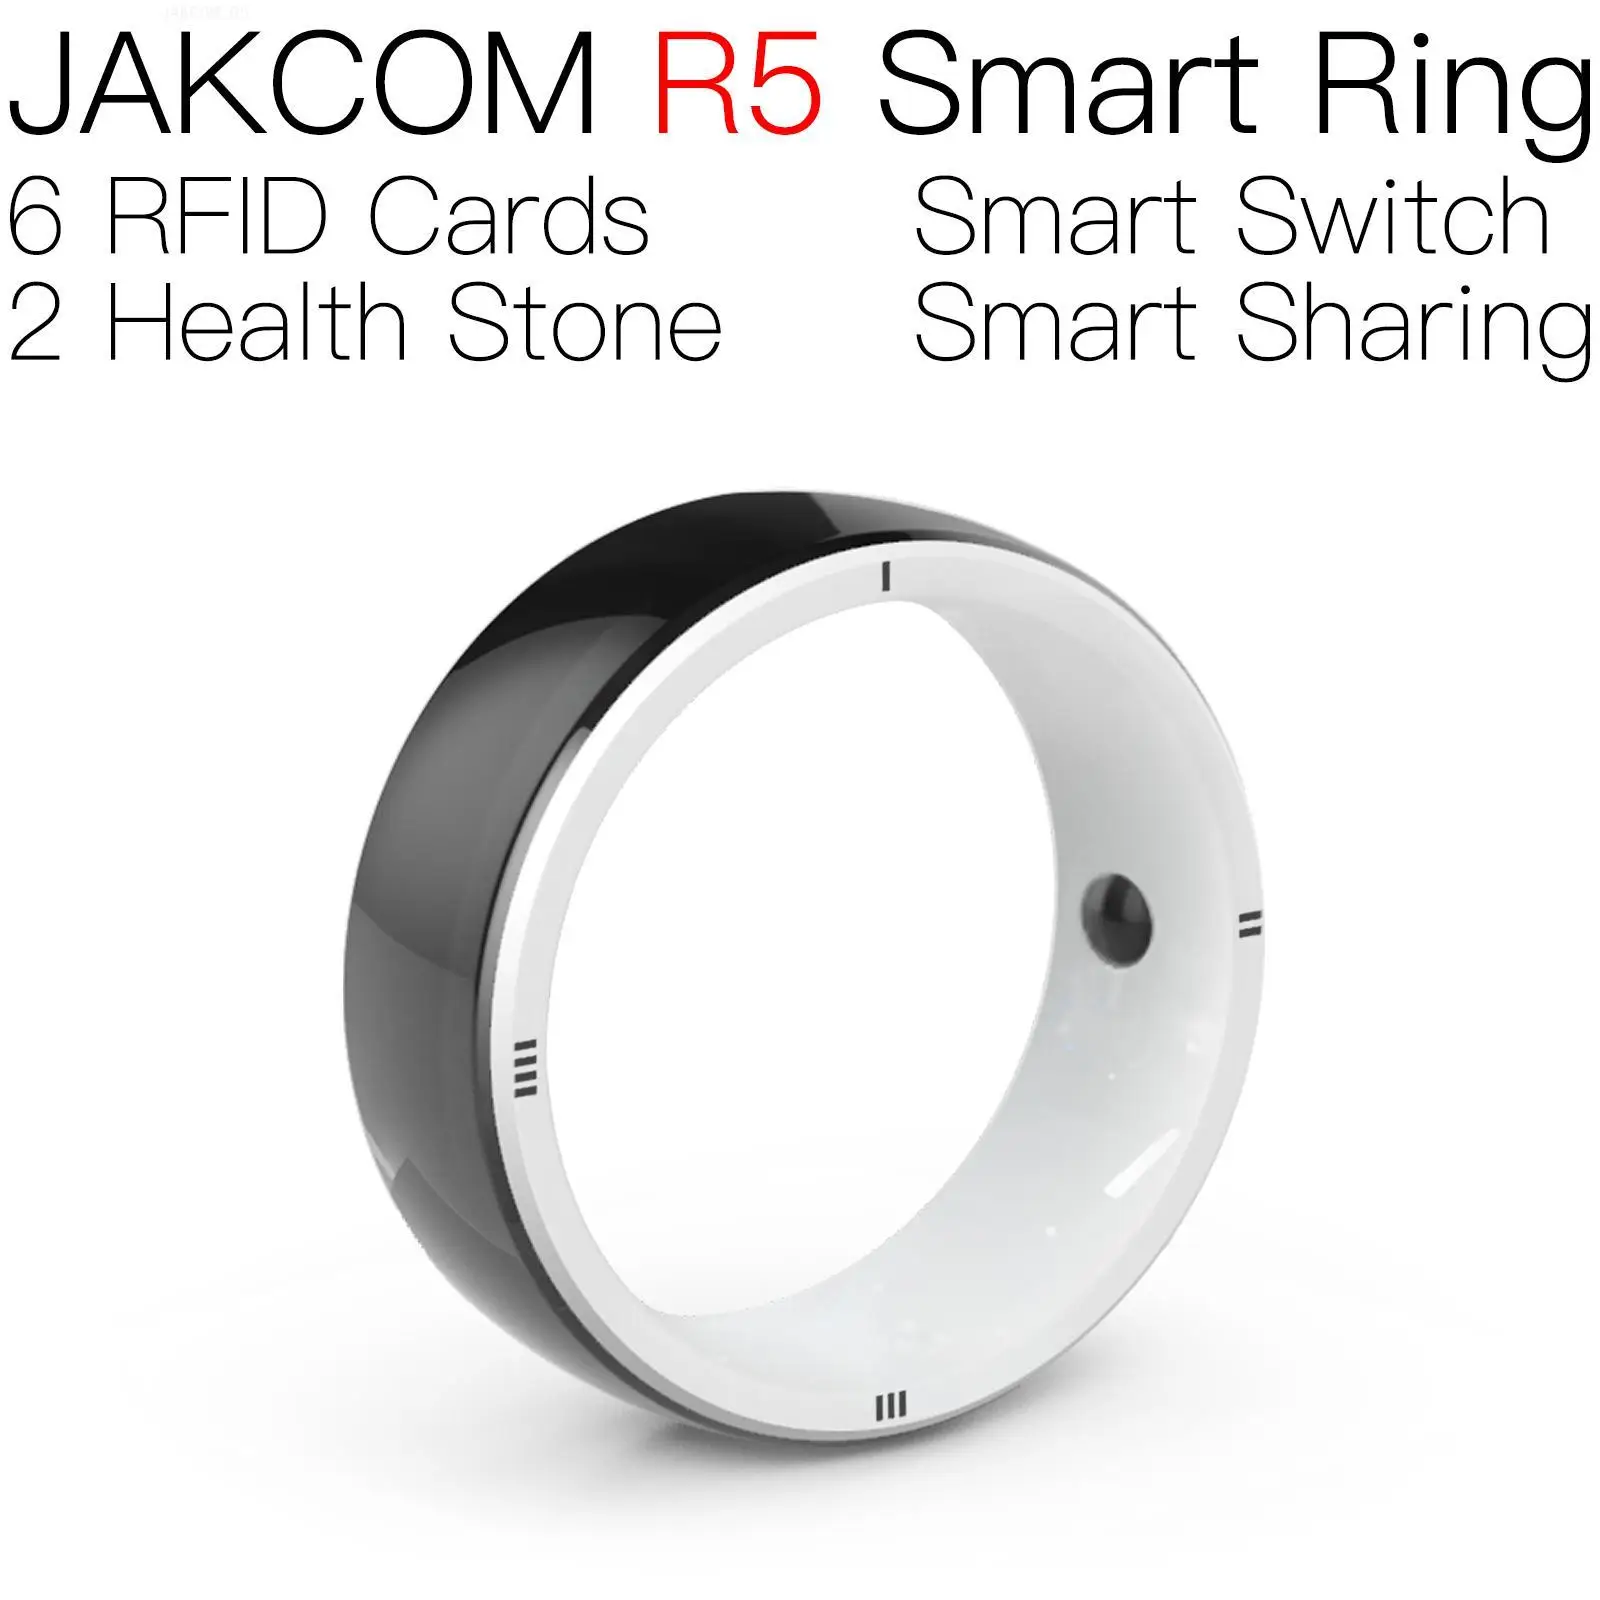 

Умное кольцо JAKCOM R5, красивое, чем клон программного обеспечения, Запись трека 1 2 rfid t5577, перезаписываемая карта pbx, Бирка uhf, мотоциклетный пол